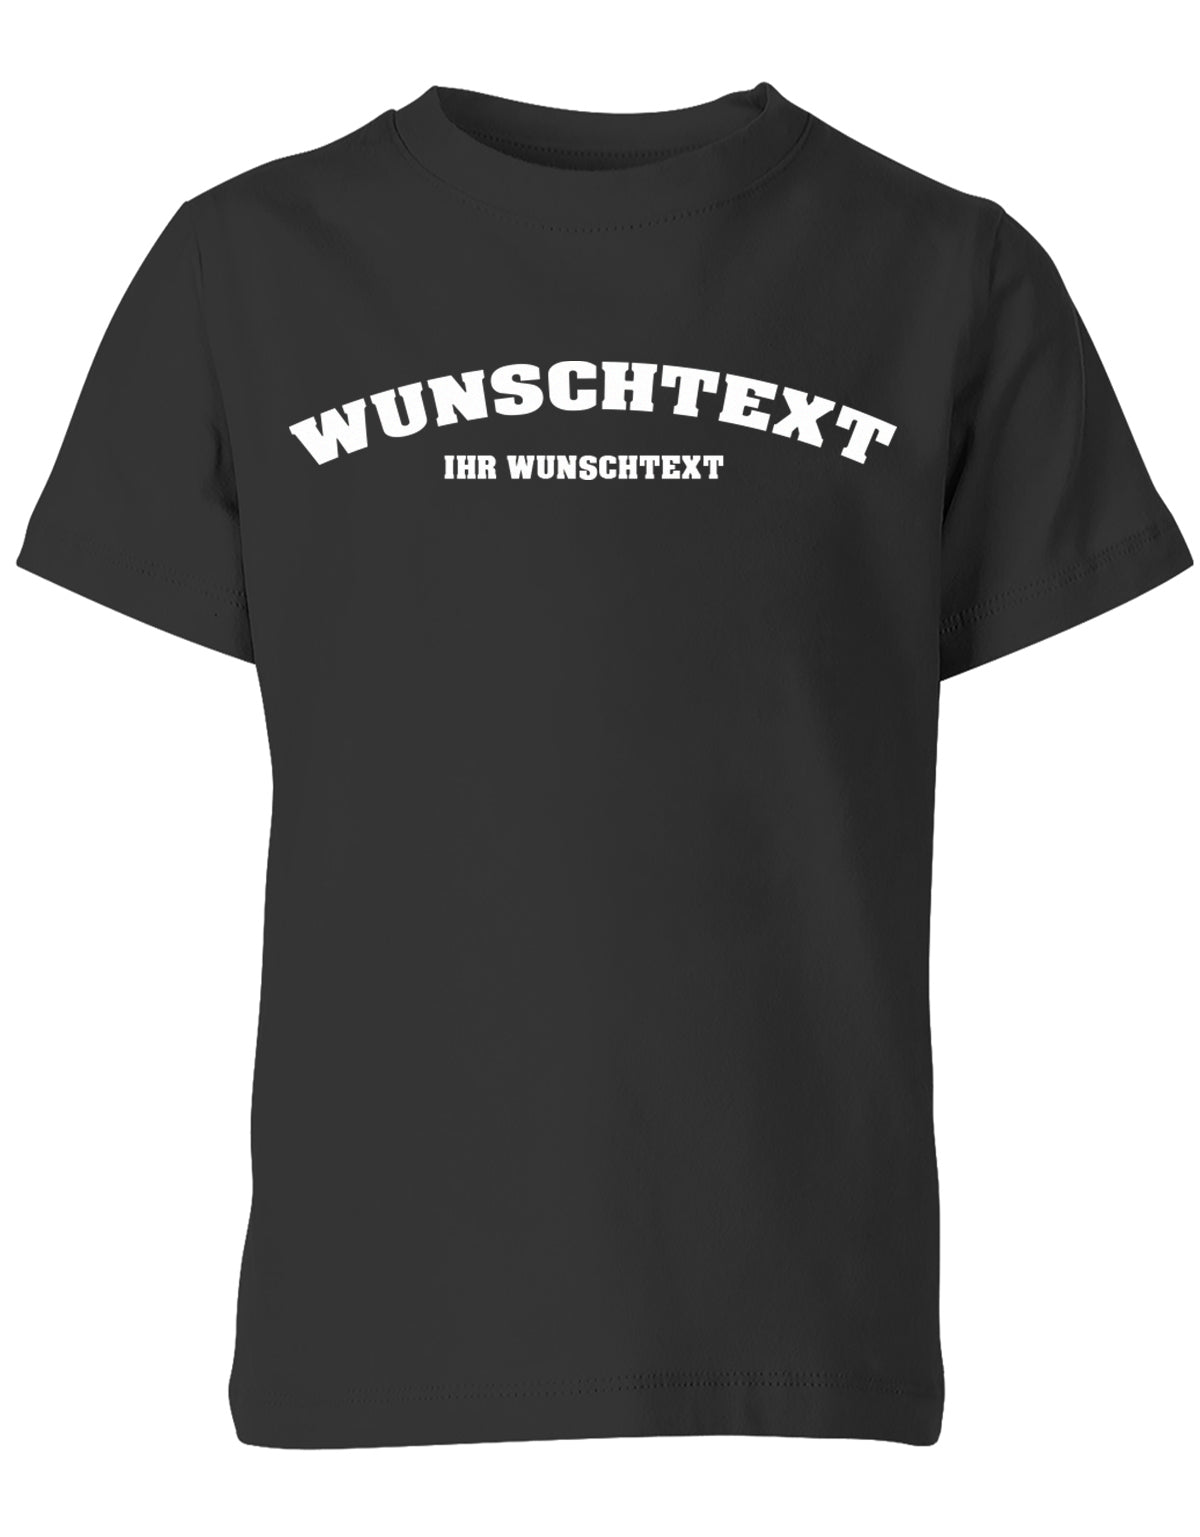 Kinder Tshirt mit Wunschtext.  Abgerundeter Text im Collage-Style. Schwarz